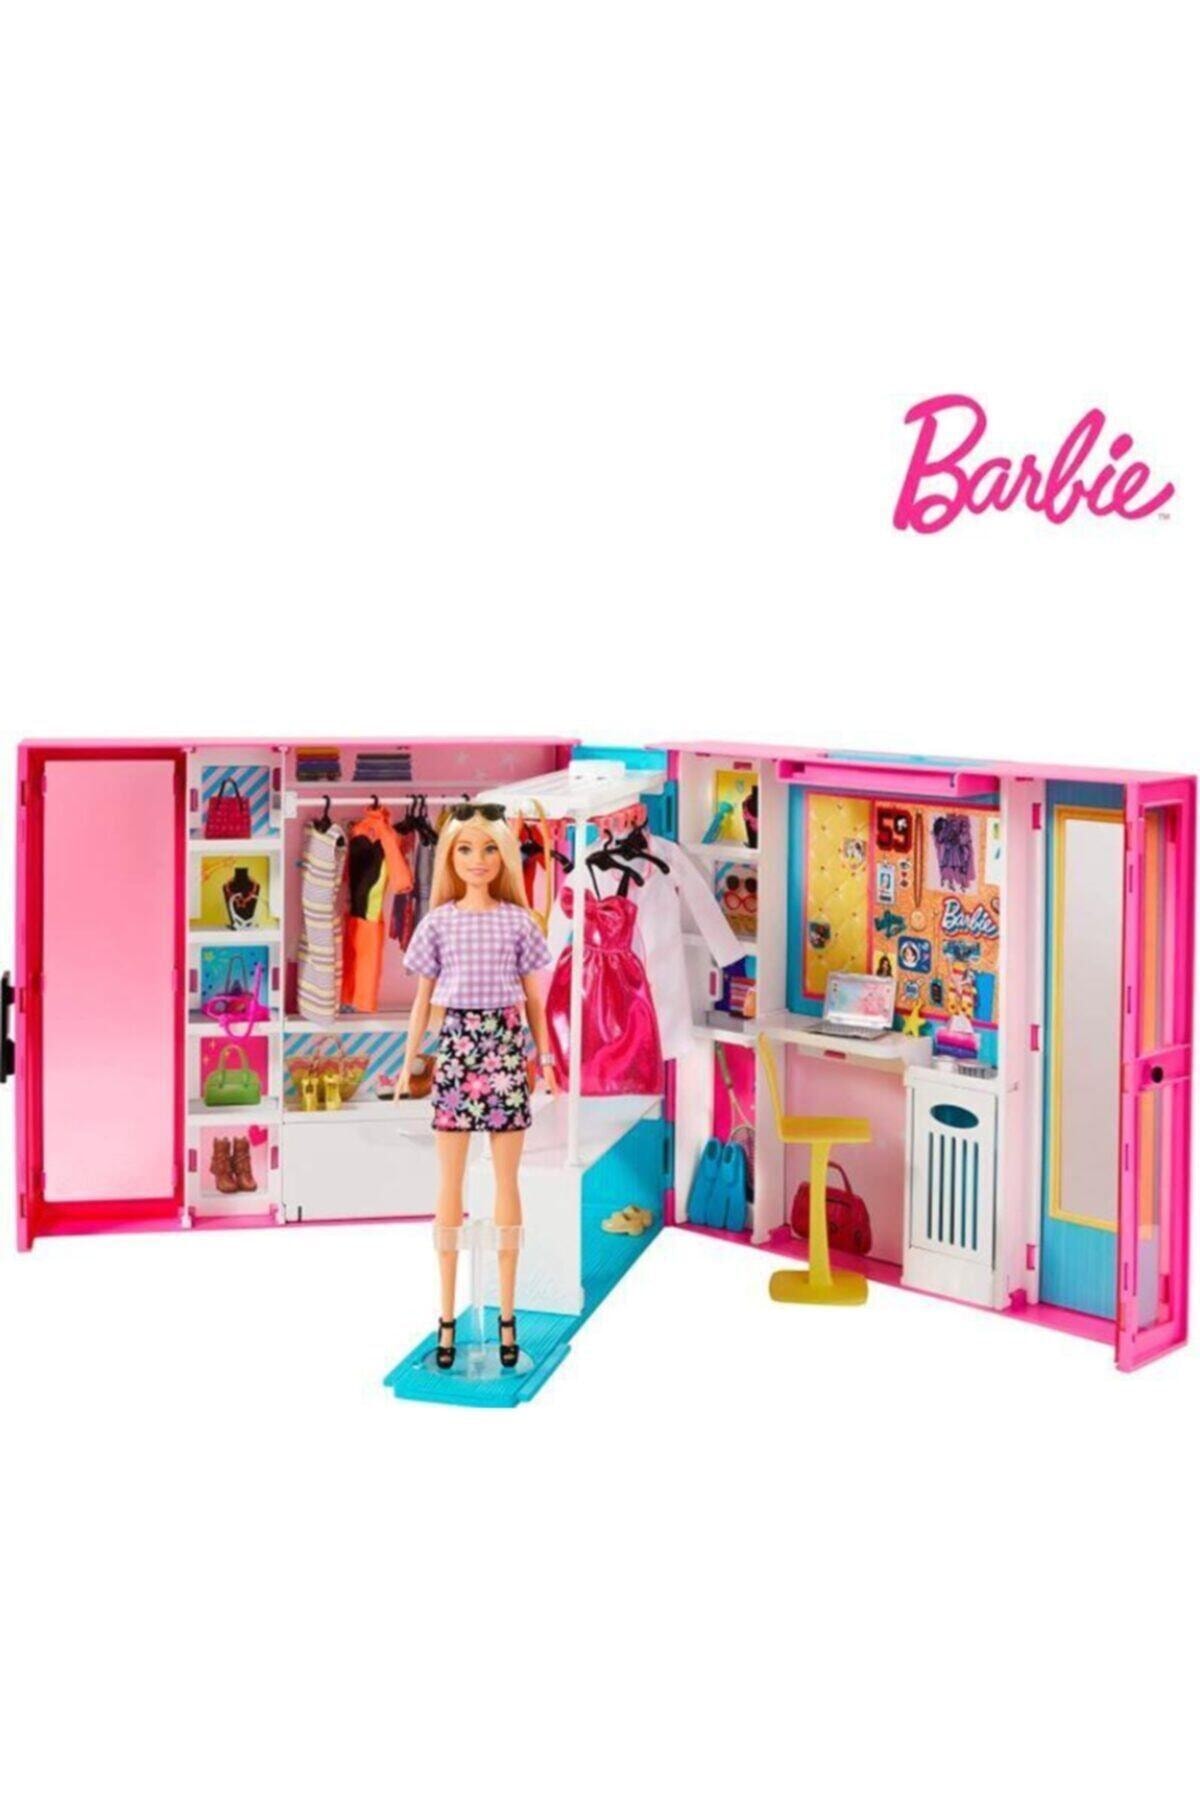 Barbie Nin Rüya Dolabı Oyun Seti Gbk10